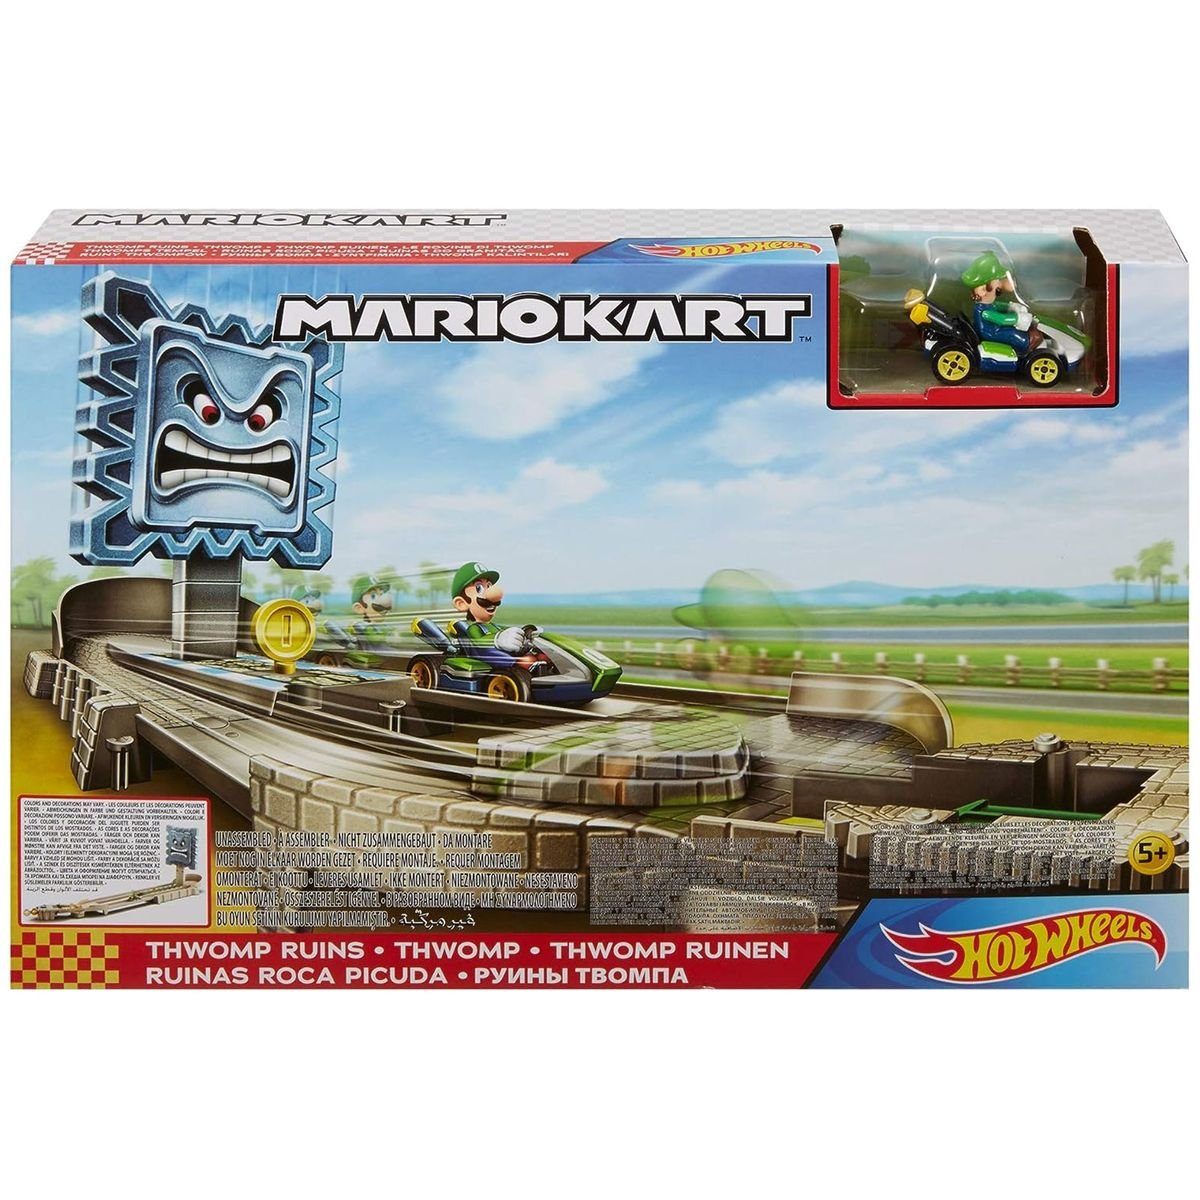 Mattel® Spielzeug-Auto Mattel GFY46 - HotWheels - Mario Kart - Steinblock-Ruinen-Trackset mit